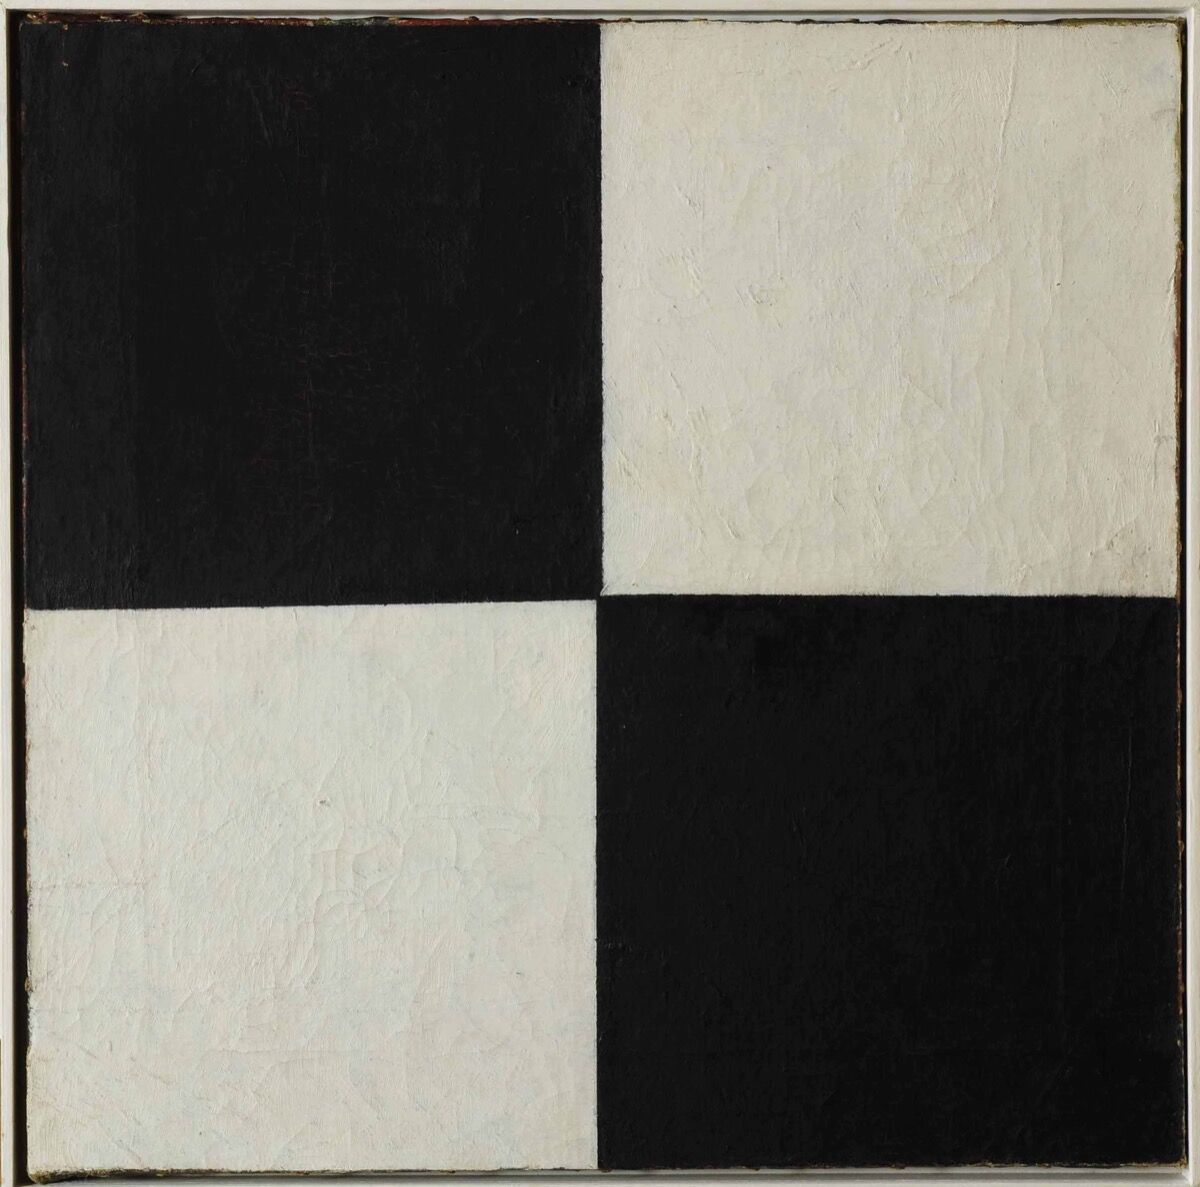 Kazimir Malevich, Four Squares, 1915. Courtesy of the Museo Nacional Centro de Arte Reina Sofía. 